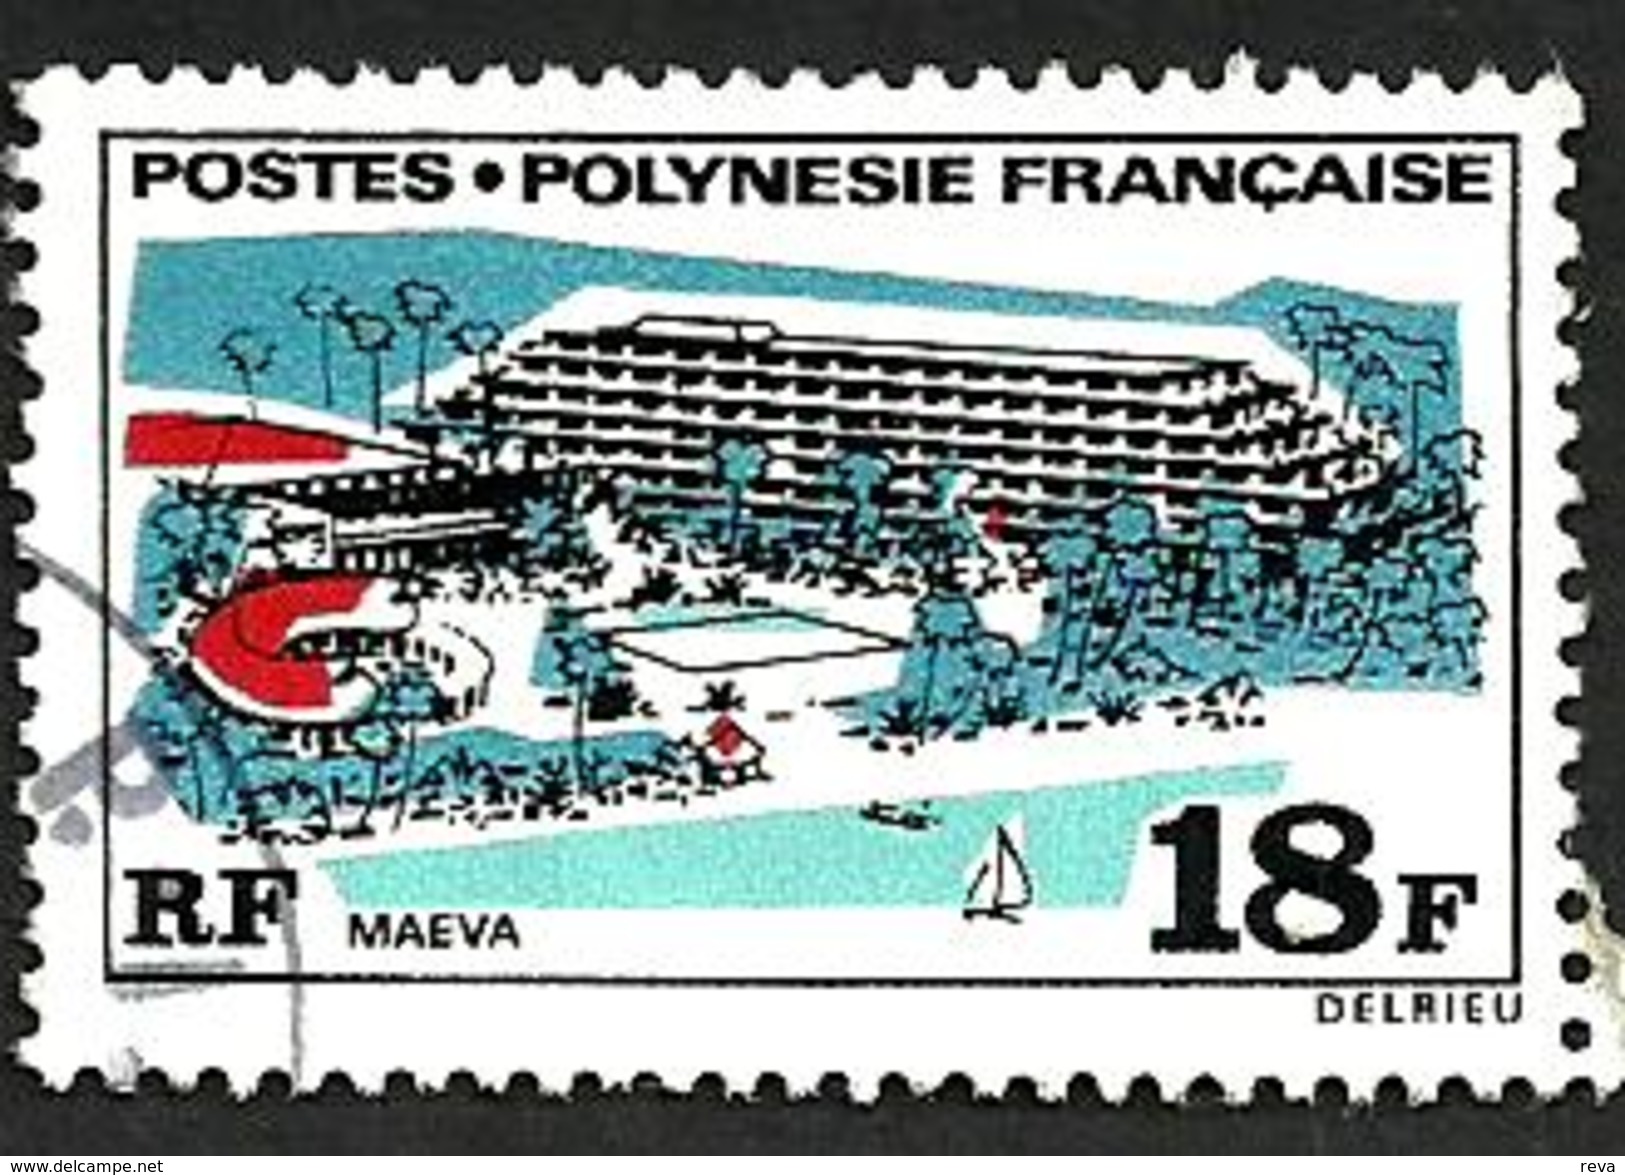 POLYNESIE FRANCAISE MAISON DU TOURISME HOTEL 18 FR STAMP ISSUED 1970's SG107 USED CV£6 READ DESCRIPTION!! - Oblitérés